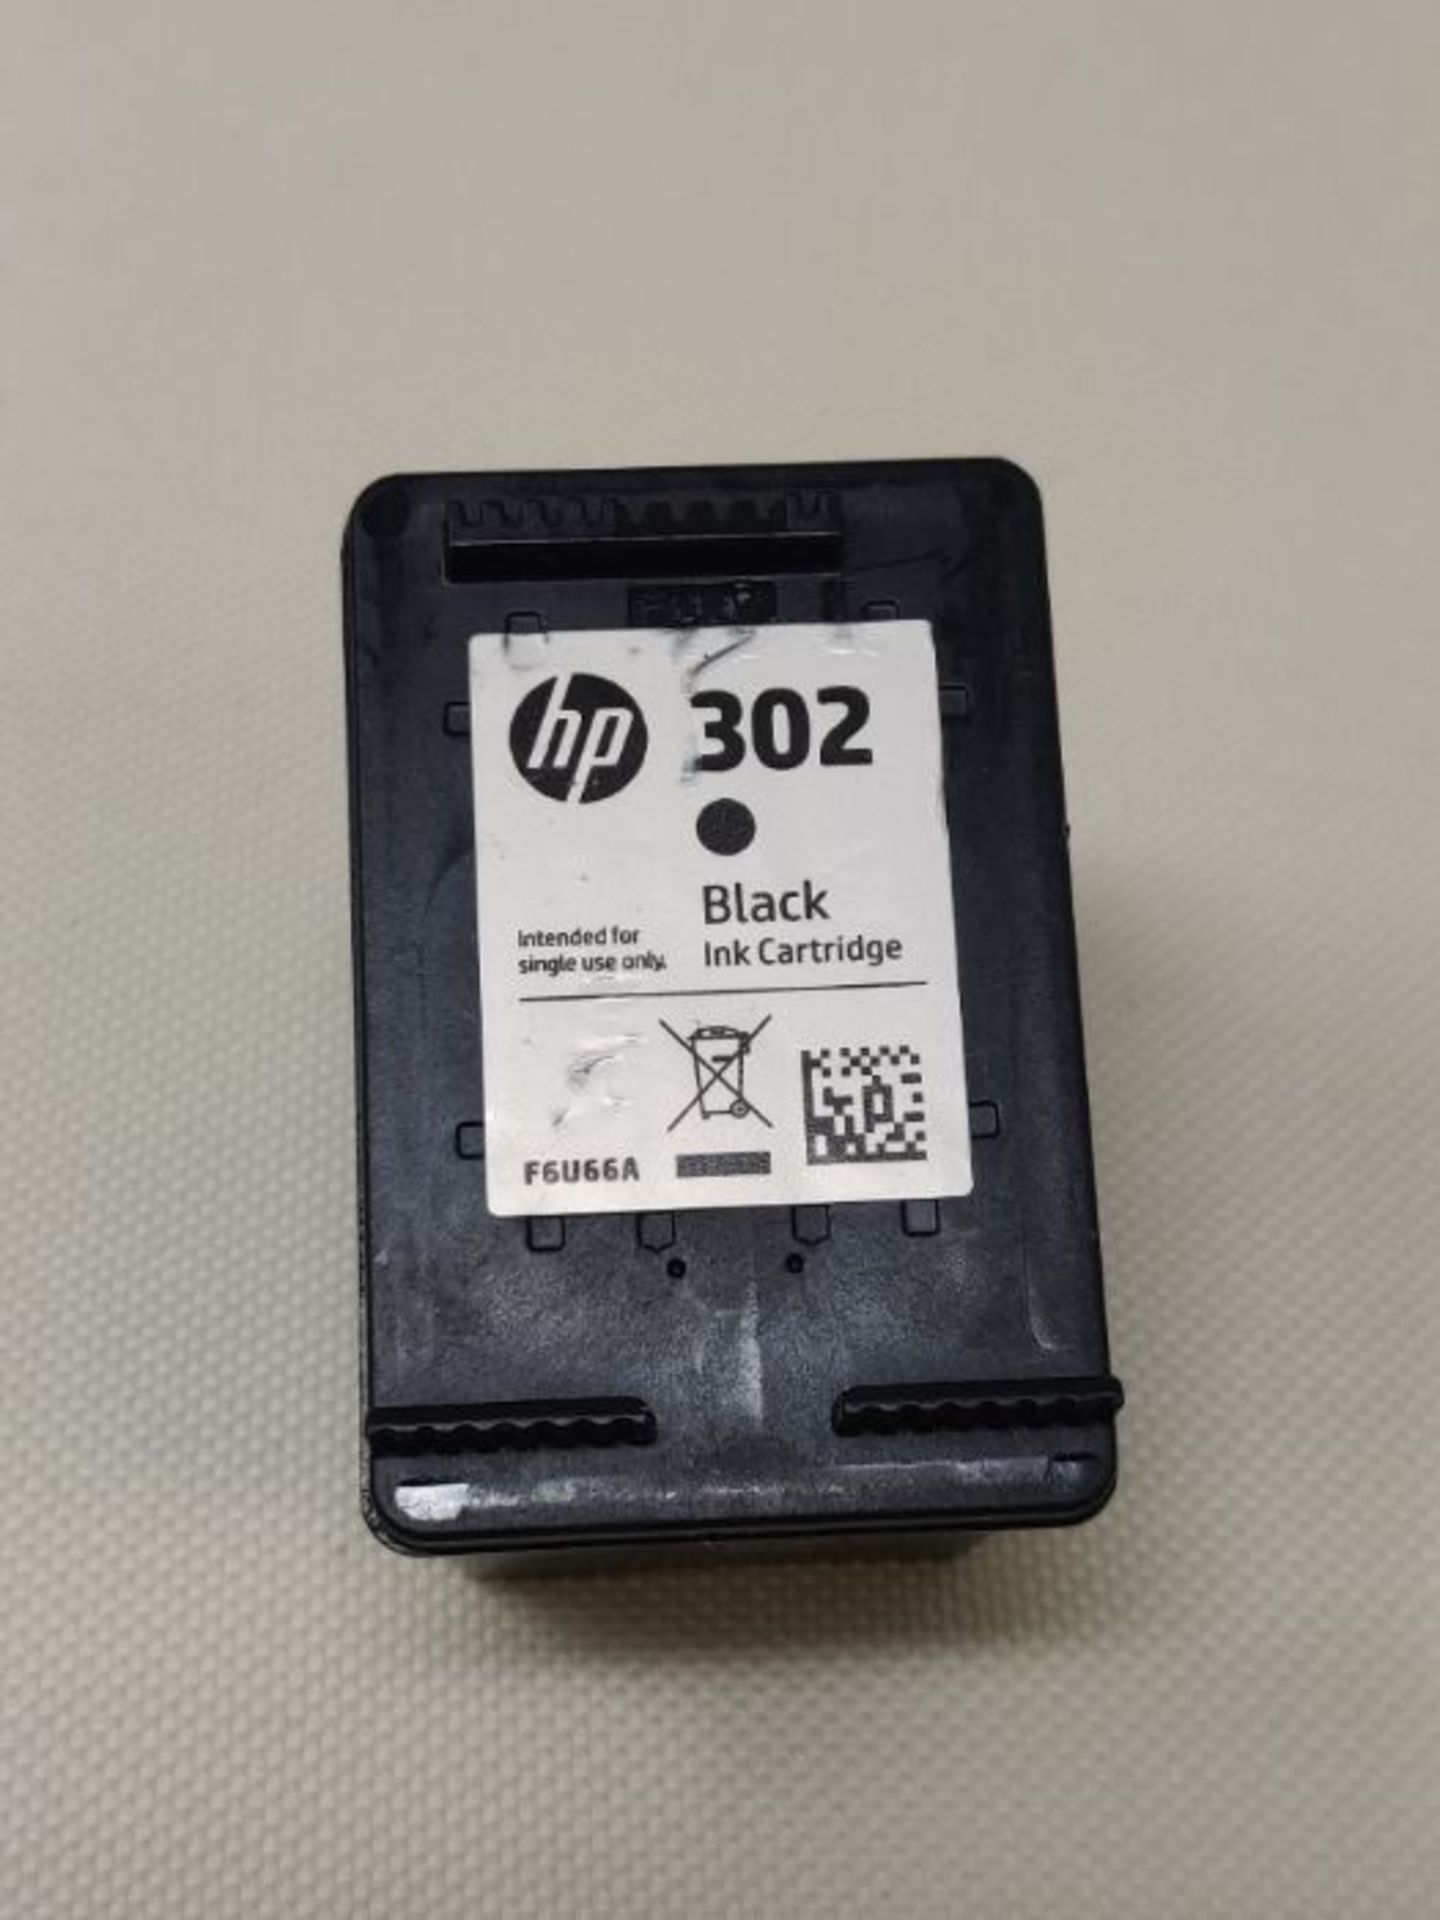 HP F6U66AE 302 Original Ink Cartridge, Black, Single Pack - Image 3 of 3